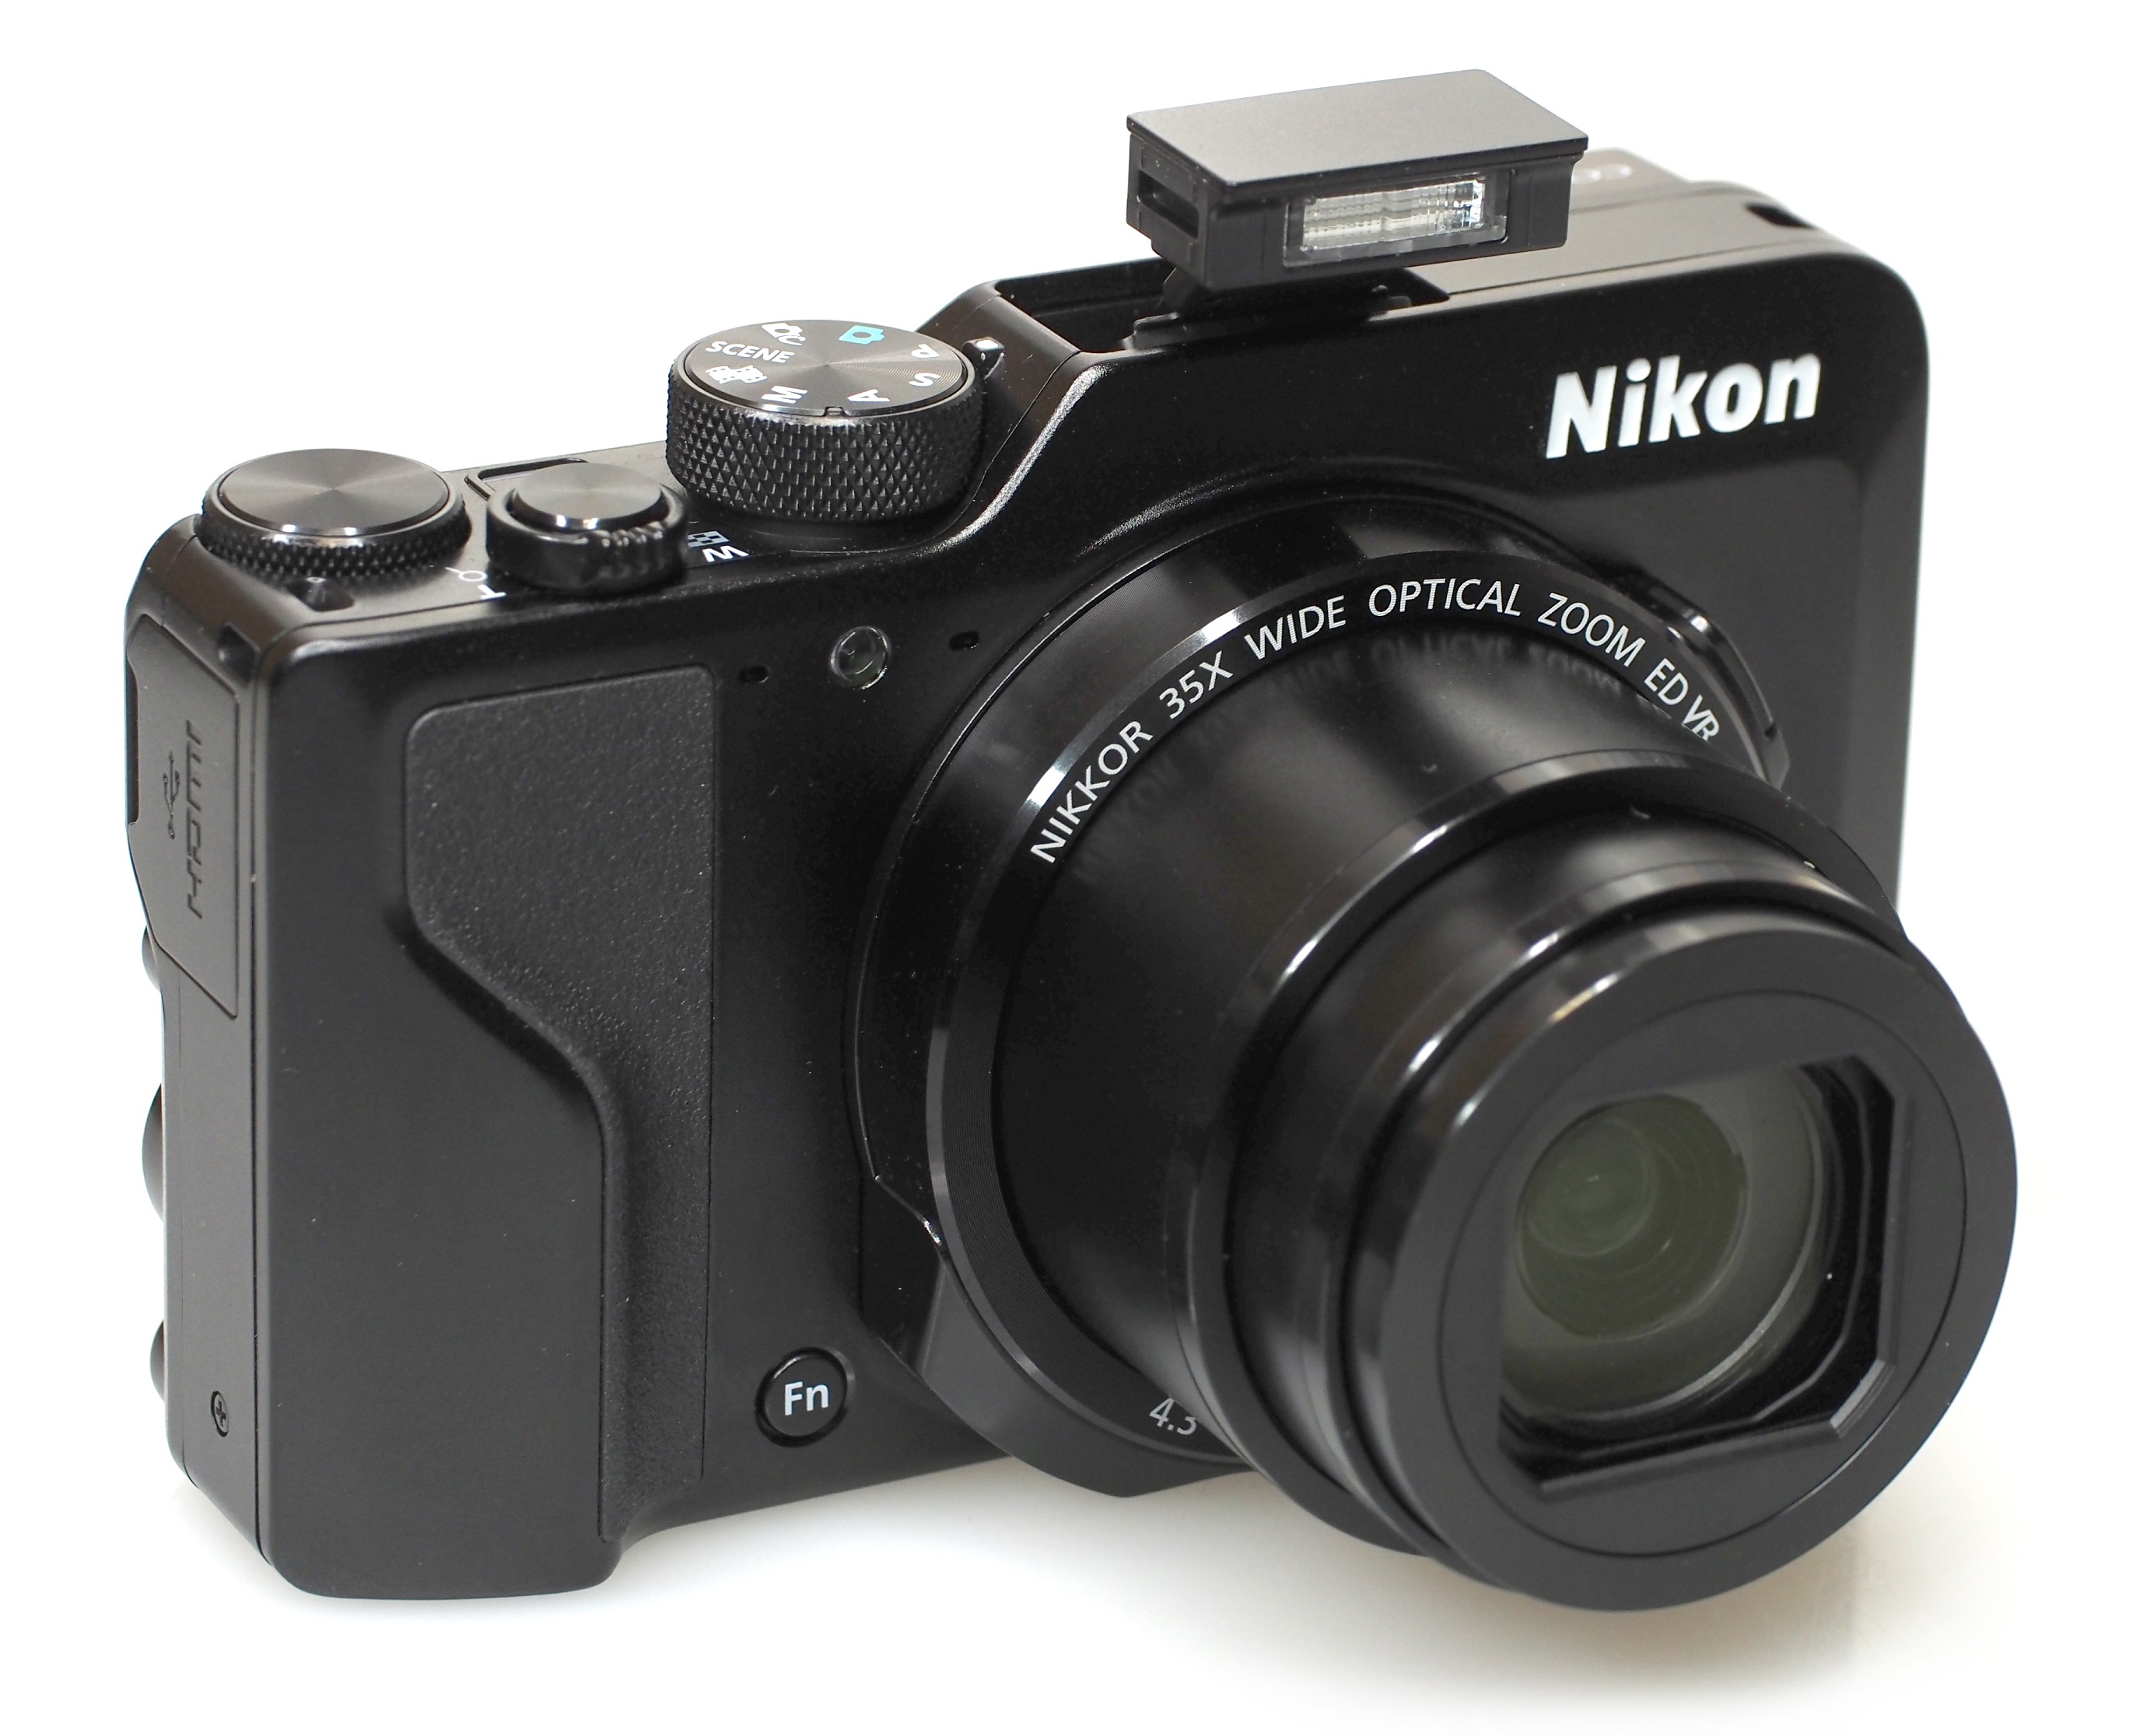 Nikon Coolpix A1000 Review